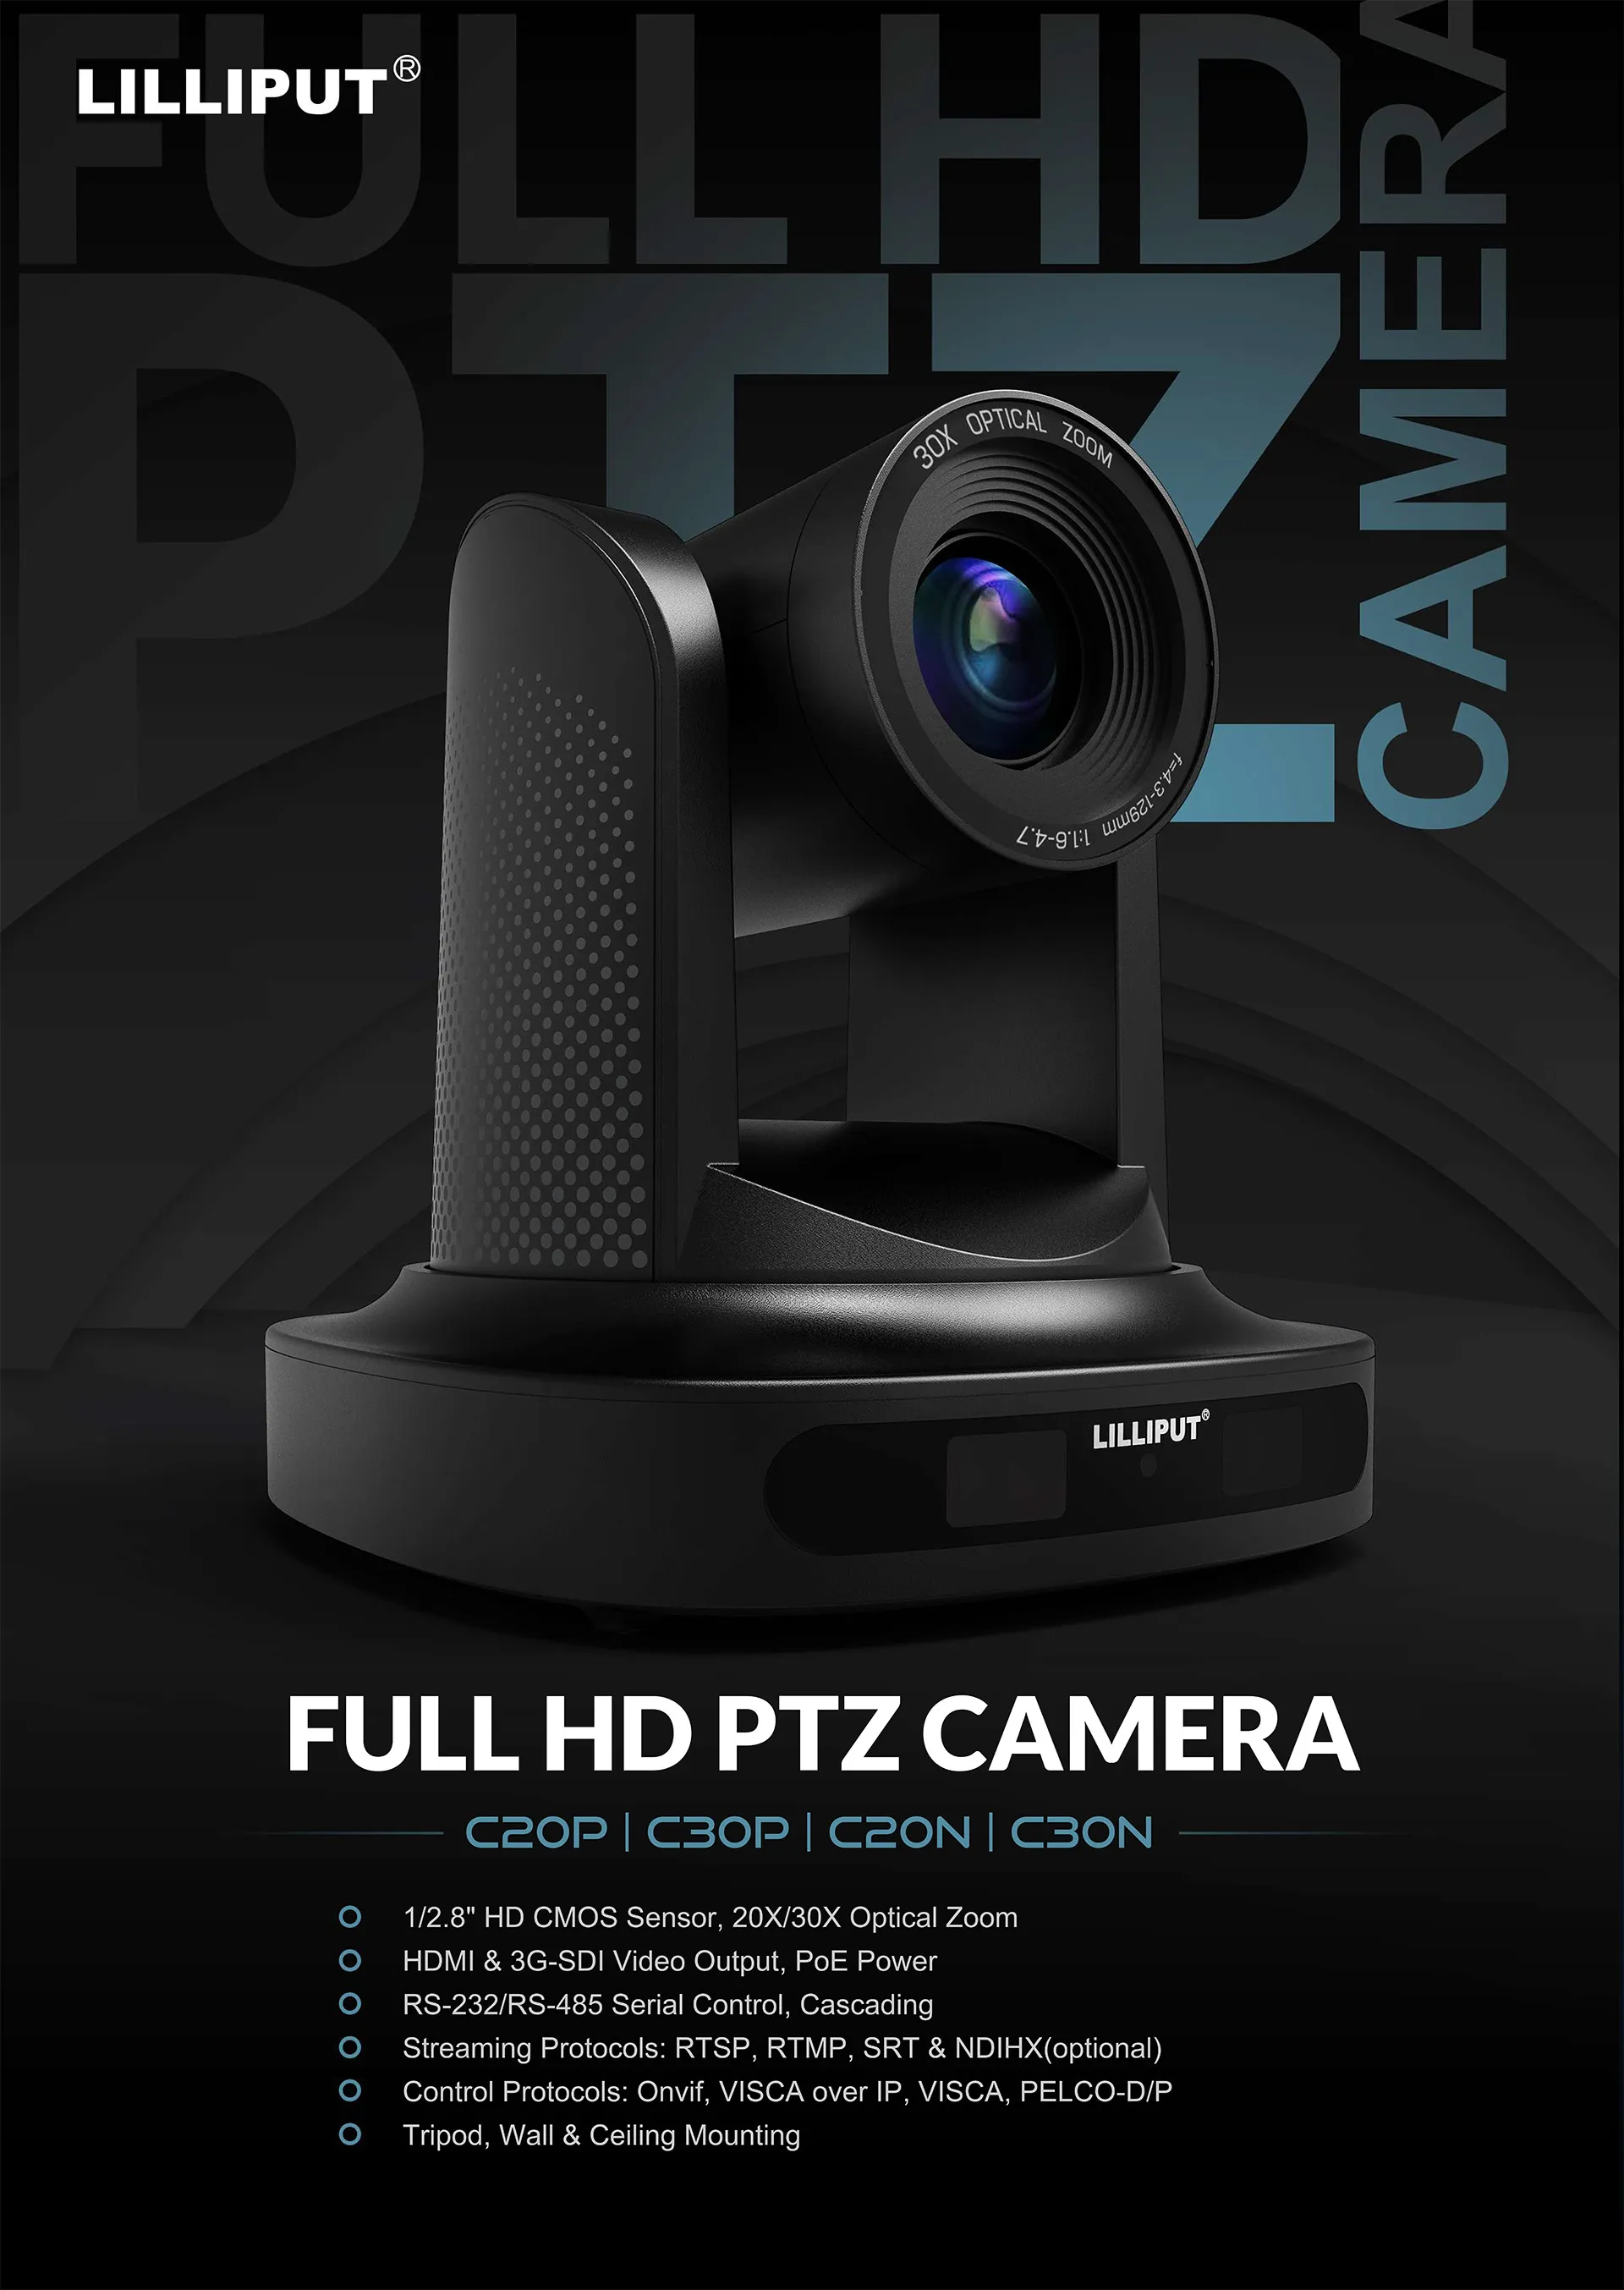 Lilliput full HD PTZ camera